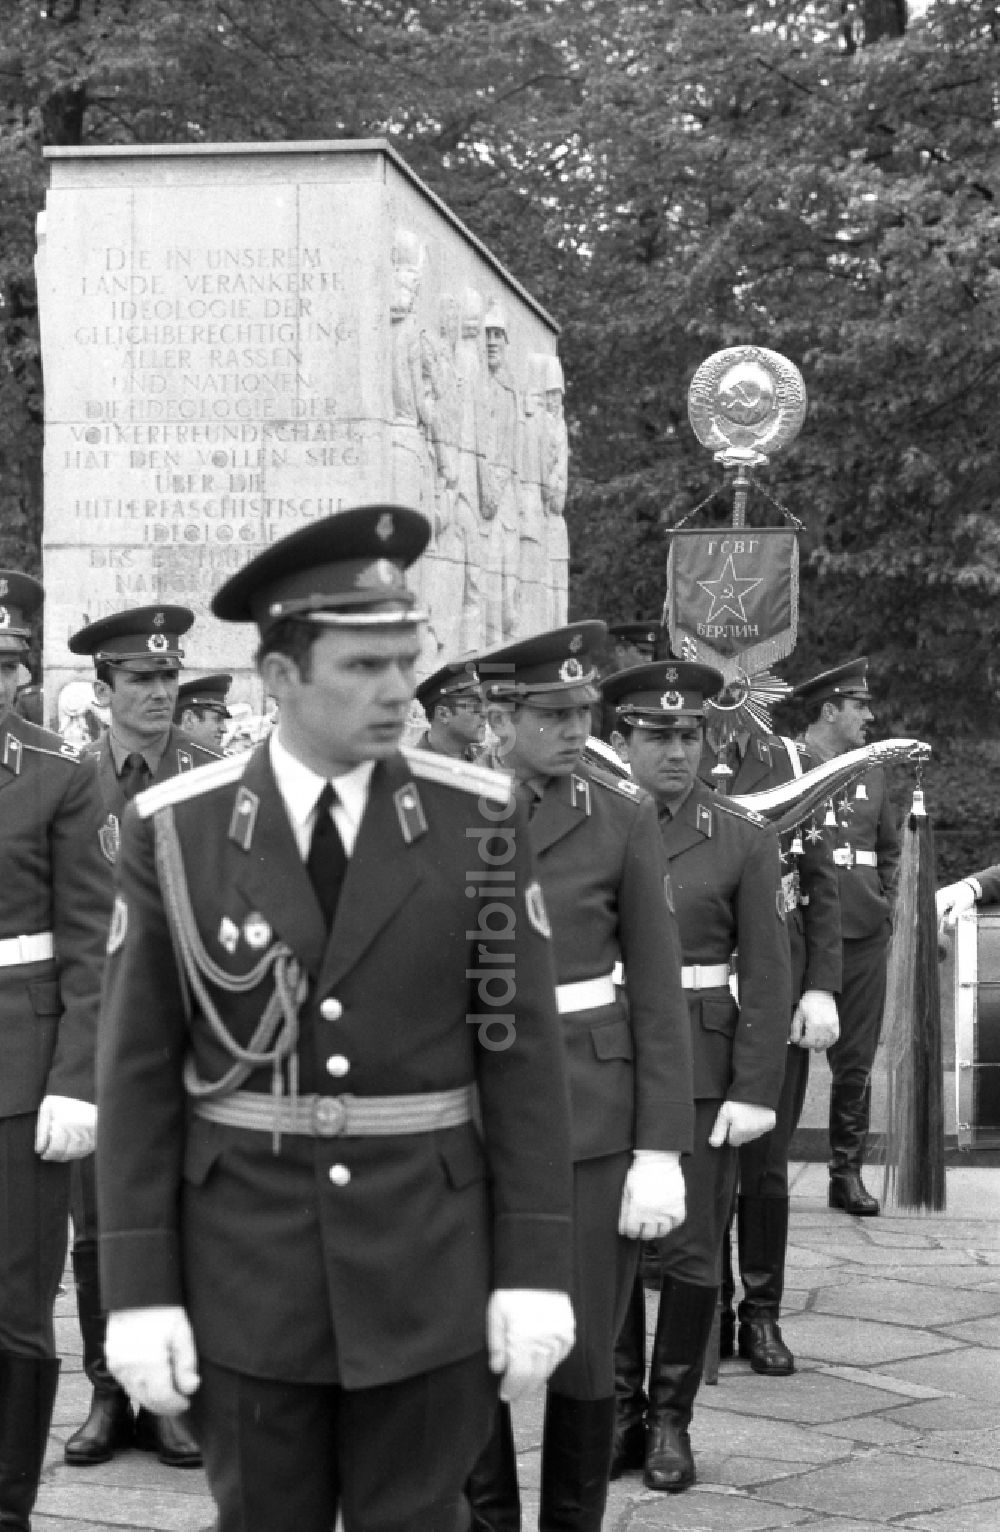 DDR-Fotoarchiv: Berlin - Marschformation von Soldaten anläßlich einer Kranzniederlegung am Ehrenmal für die gefallenen sowjetischen Soldaten in Berlin auf dem Gebiet der ehemaligen DDR, Deutsche Demokratische Republik